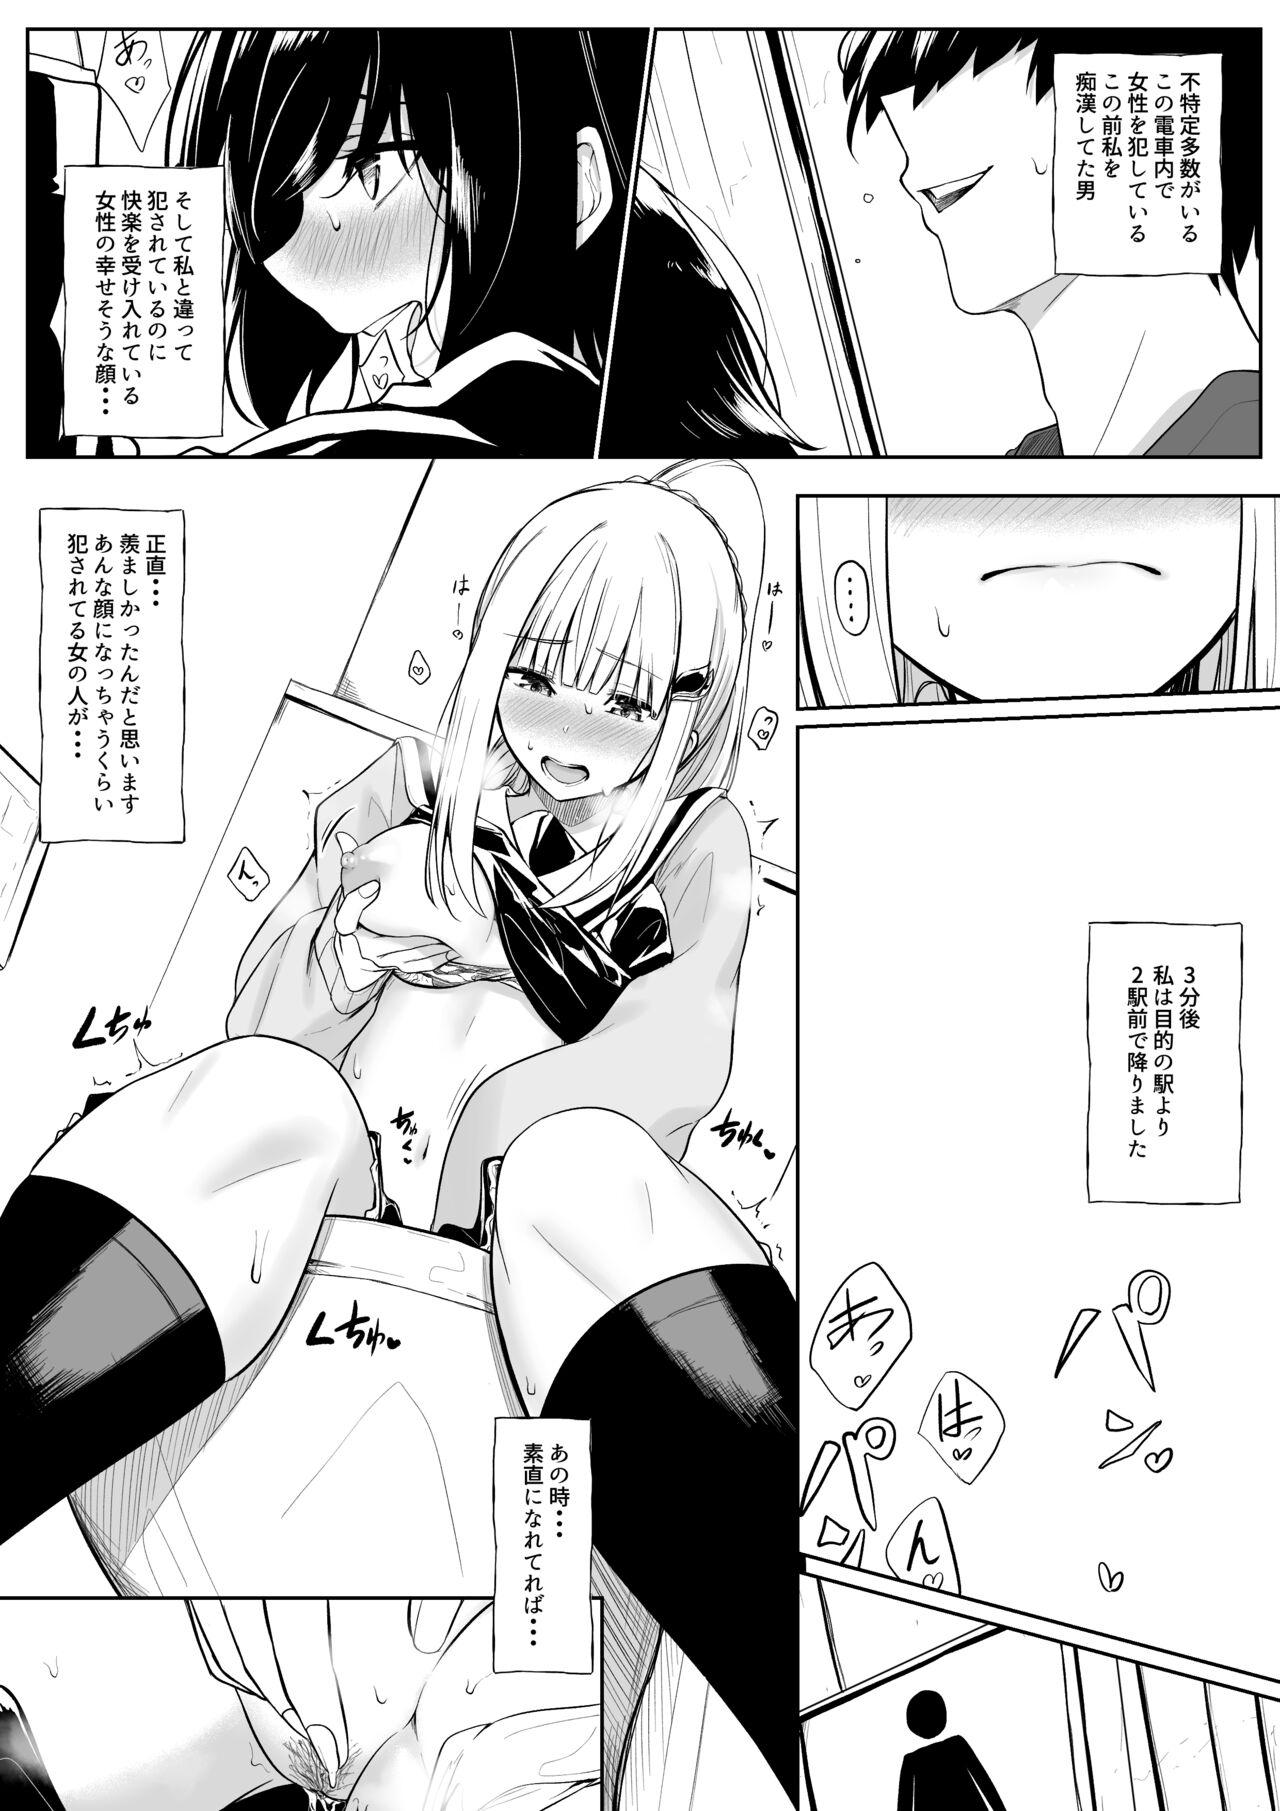 Amature Porn Chikan Sareta Toki no koto ga Wasurerarenaku naru lz-sama - Nijisanji Sextoy - Page 6